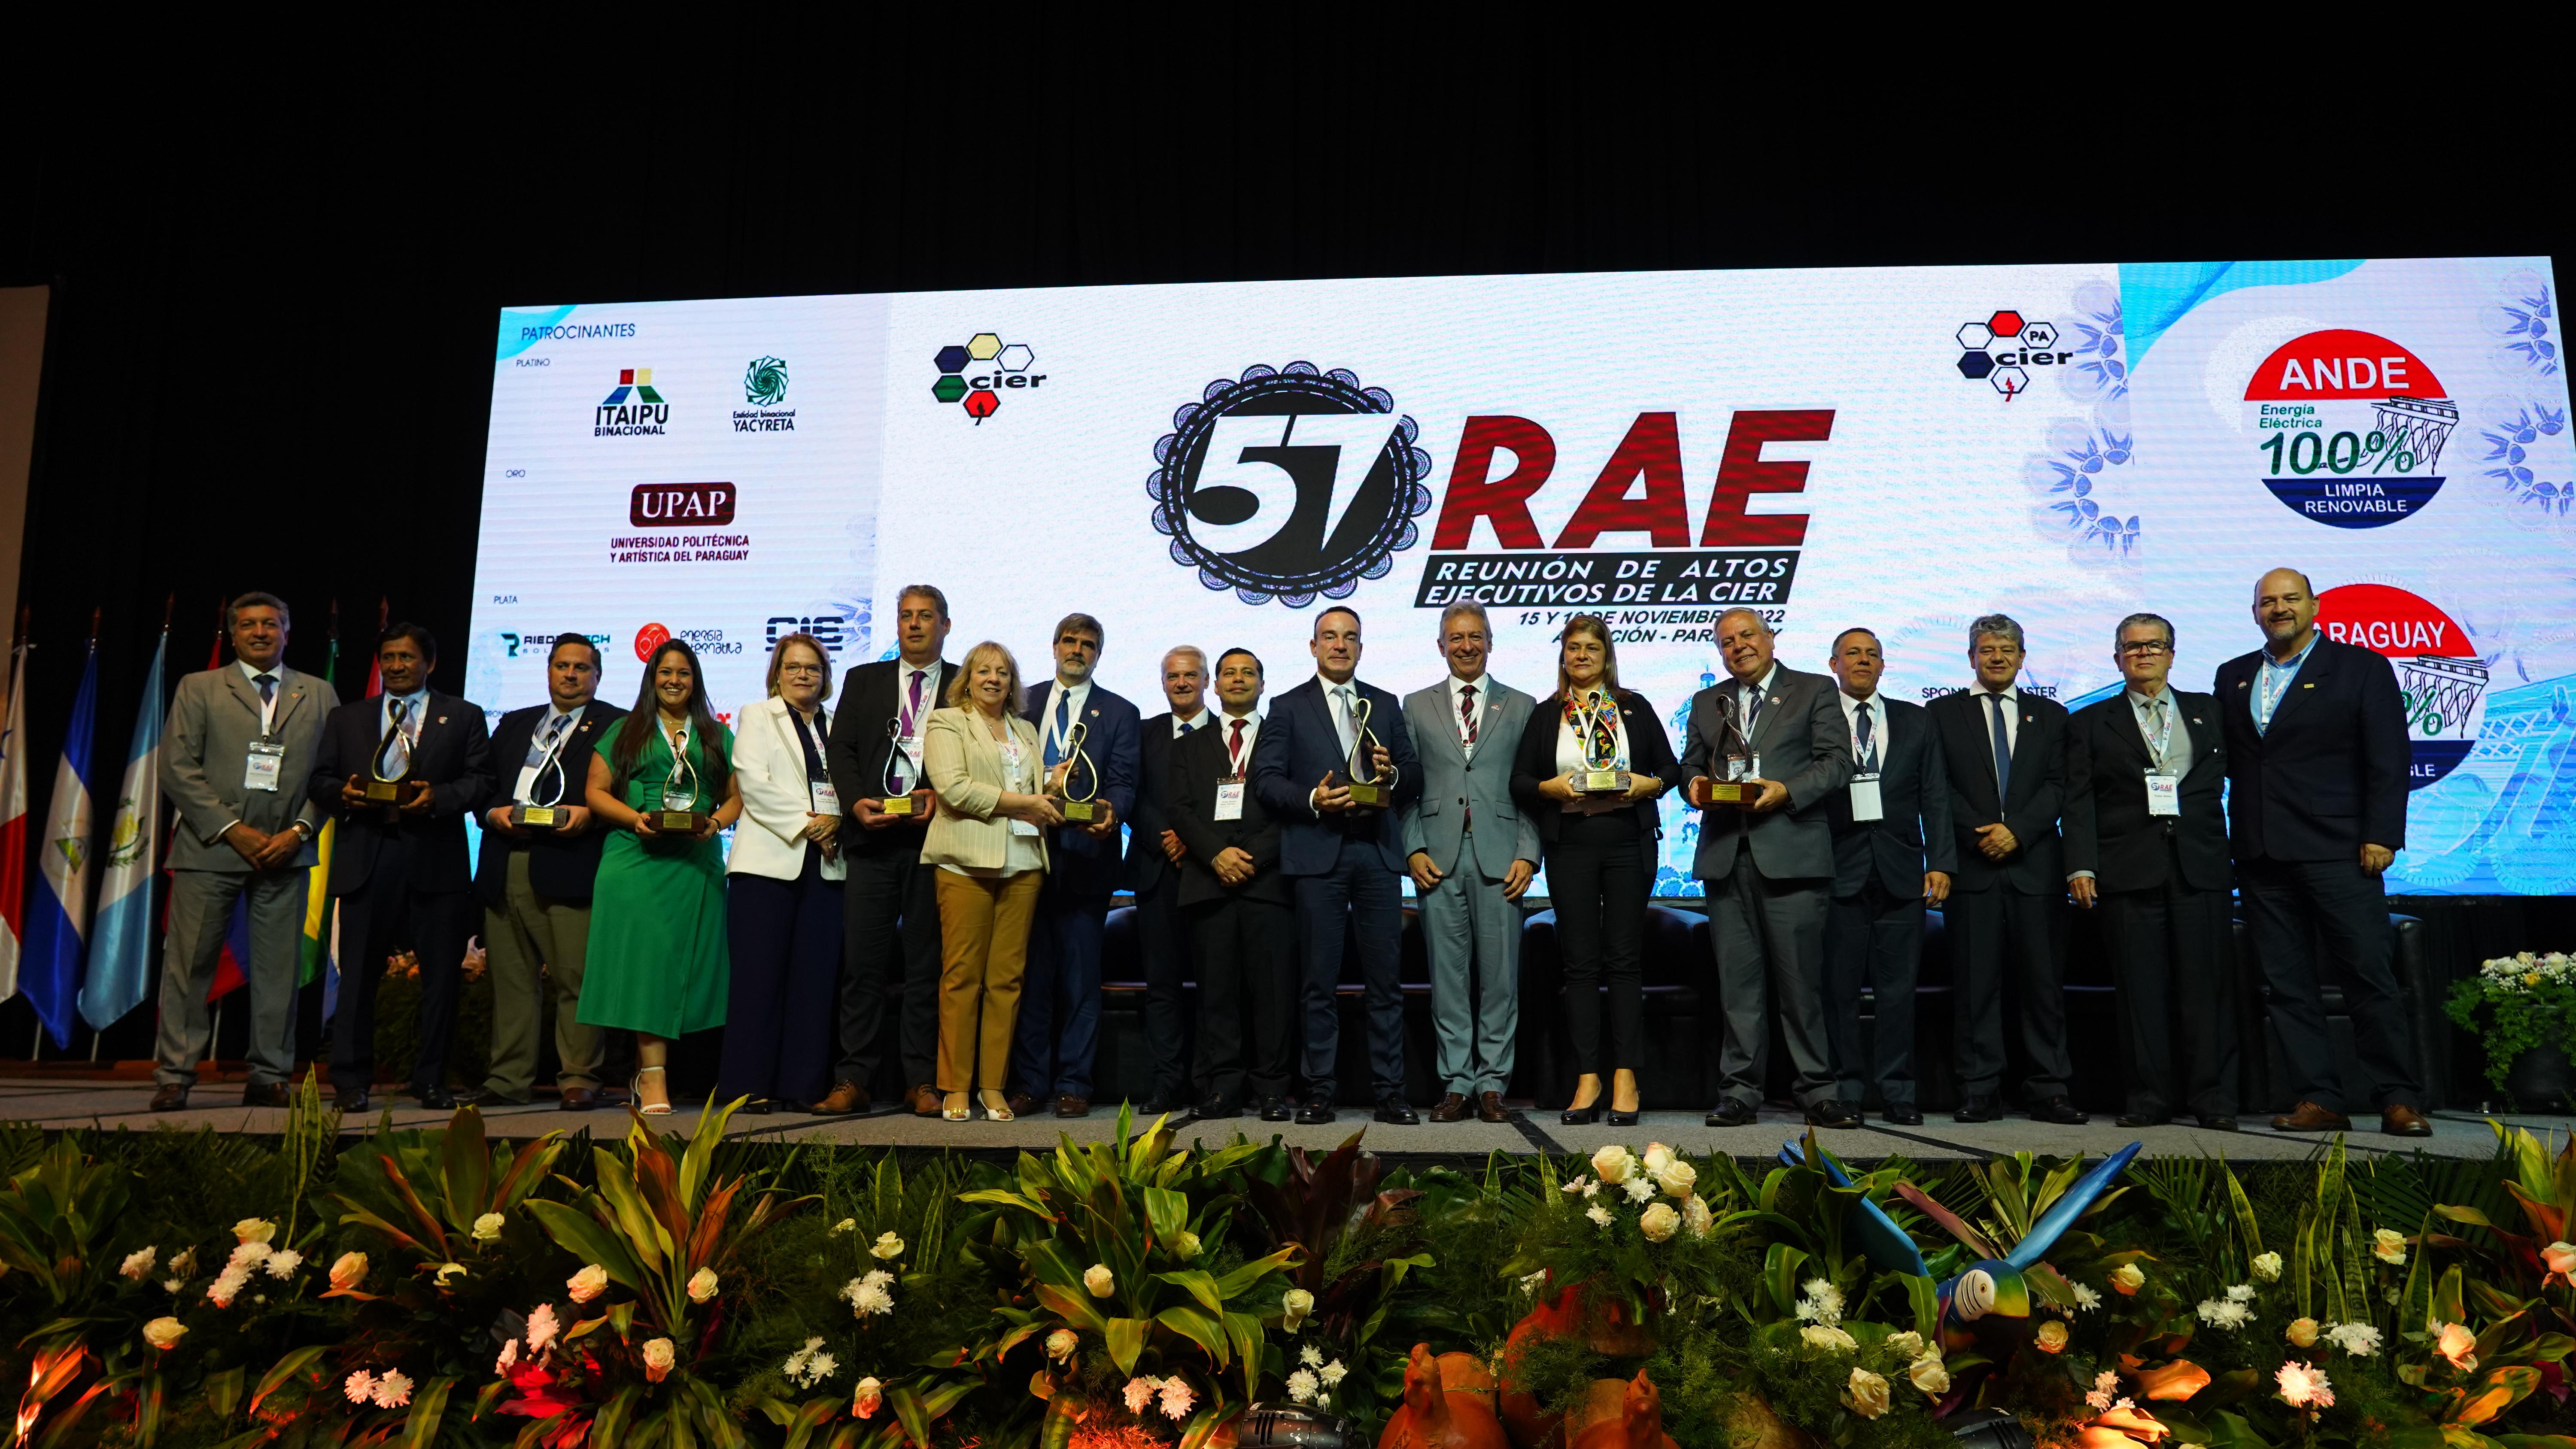 Entrega de Premios CIER - Reunión de Altos Ejecutivos 2022 (RAE)